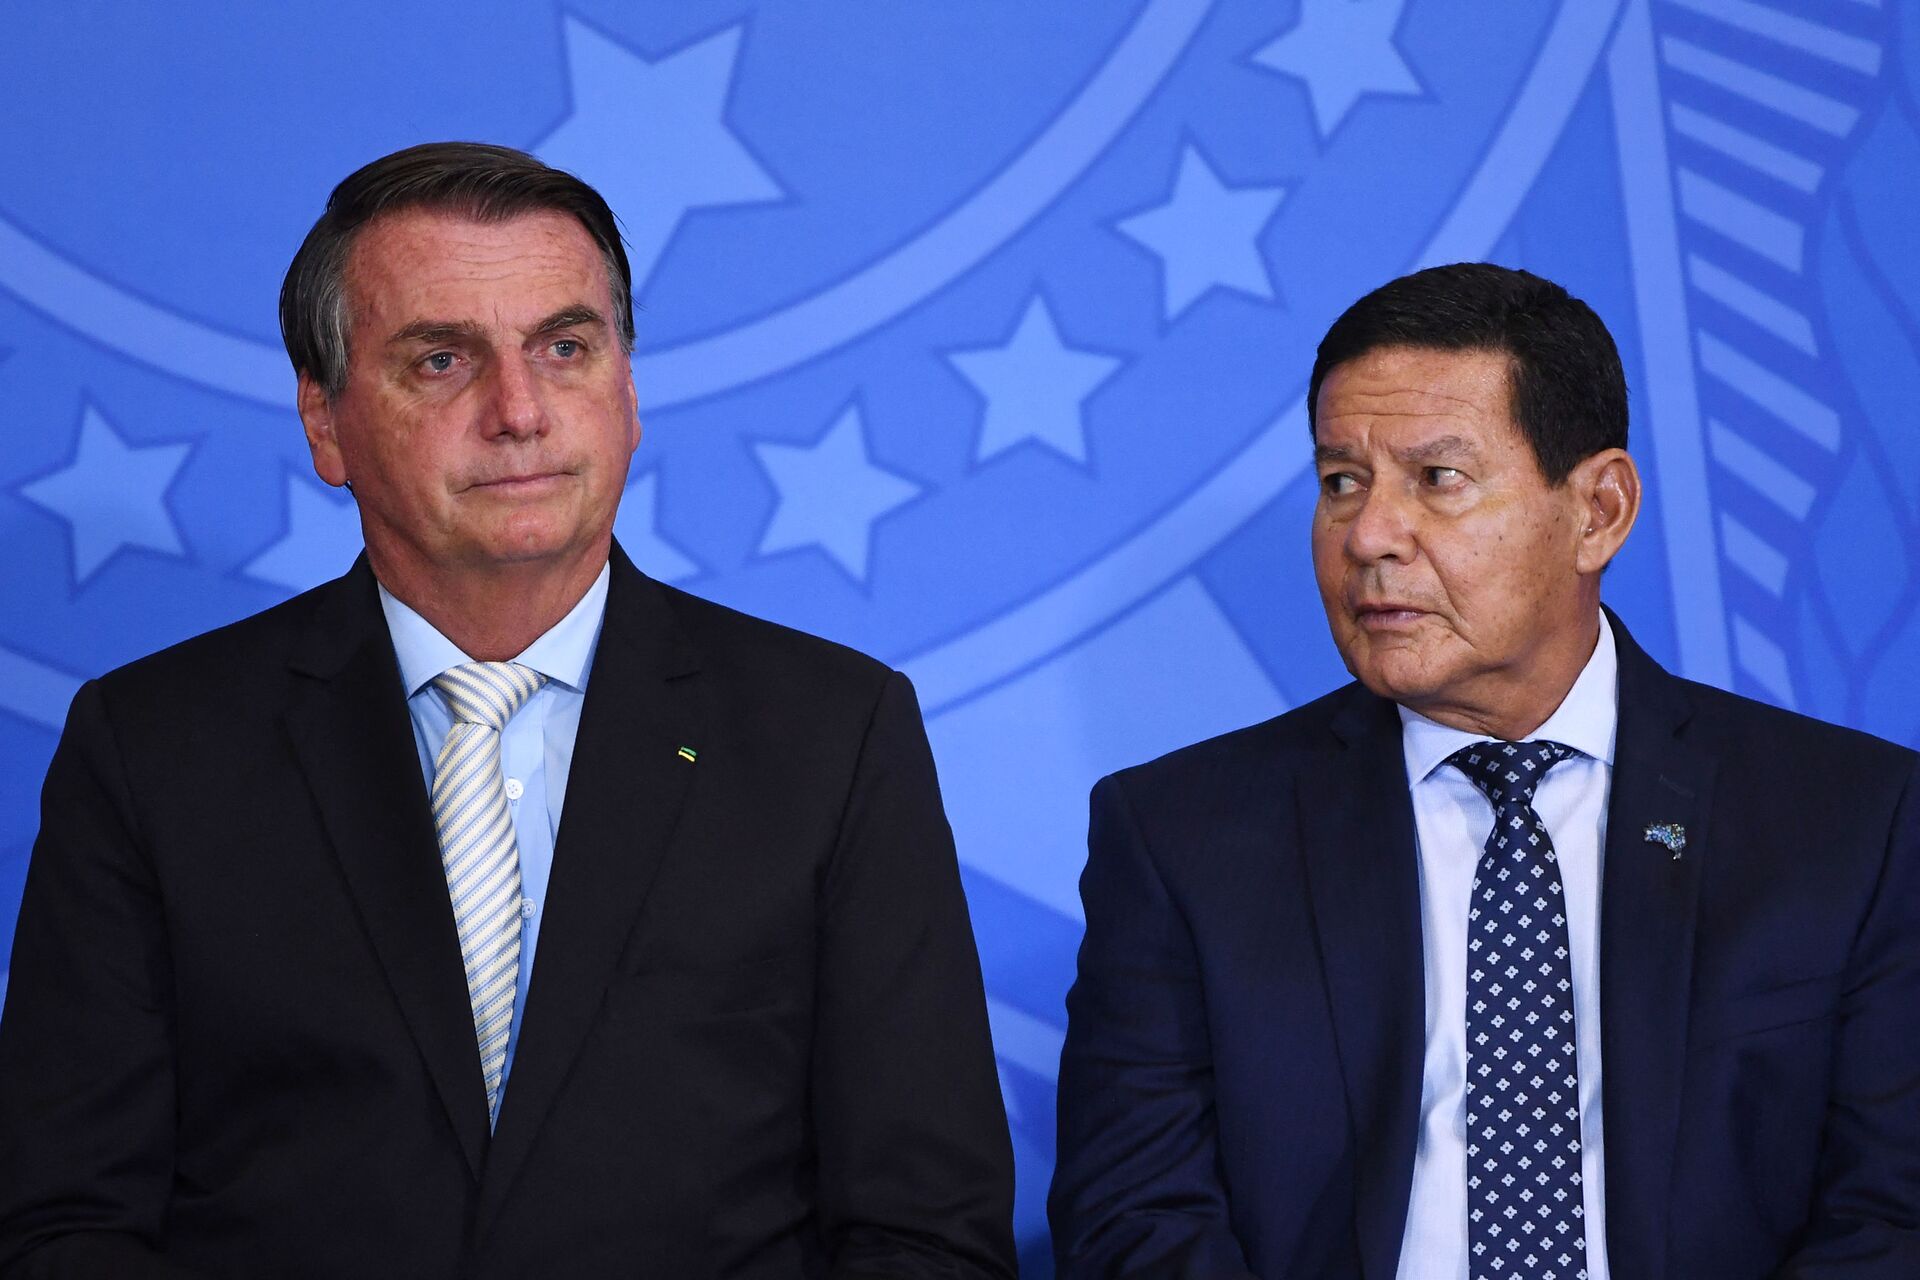 De olho no Senado, Mourão diz que Bolsonaro deve escolher outro candidato a vice para 2022 - Sputnik Brasil, 1920, 26.04.2021